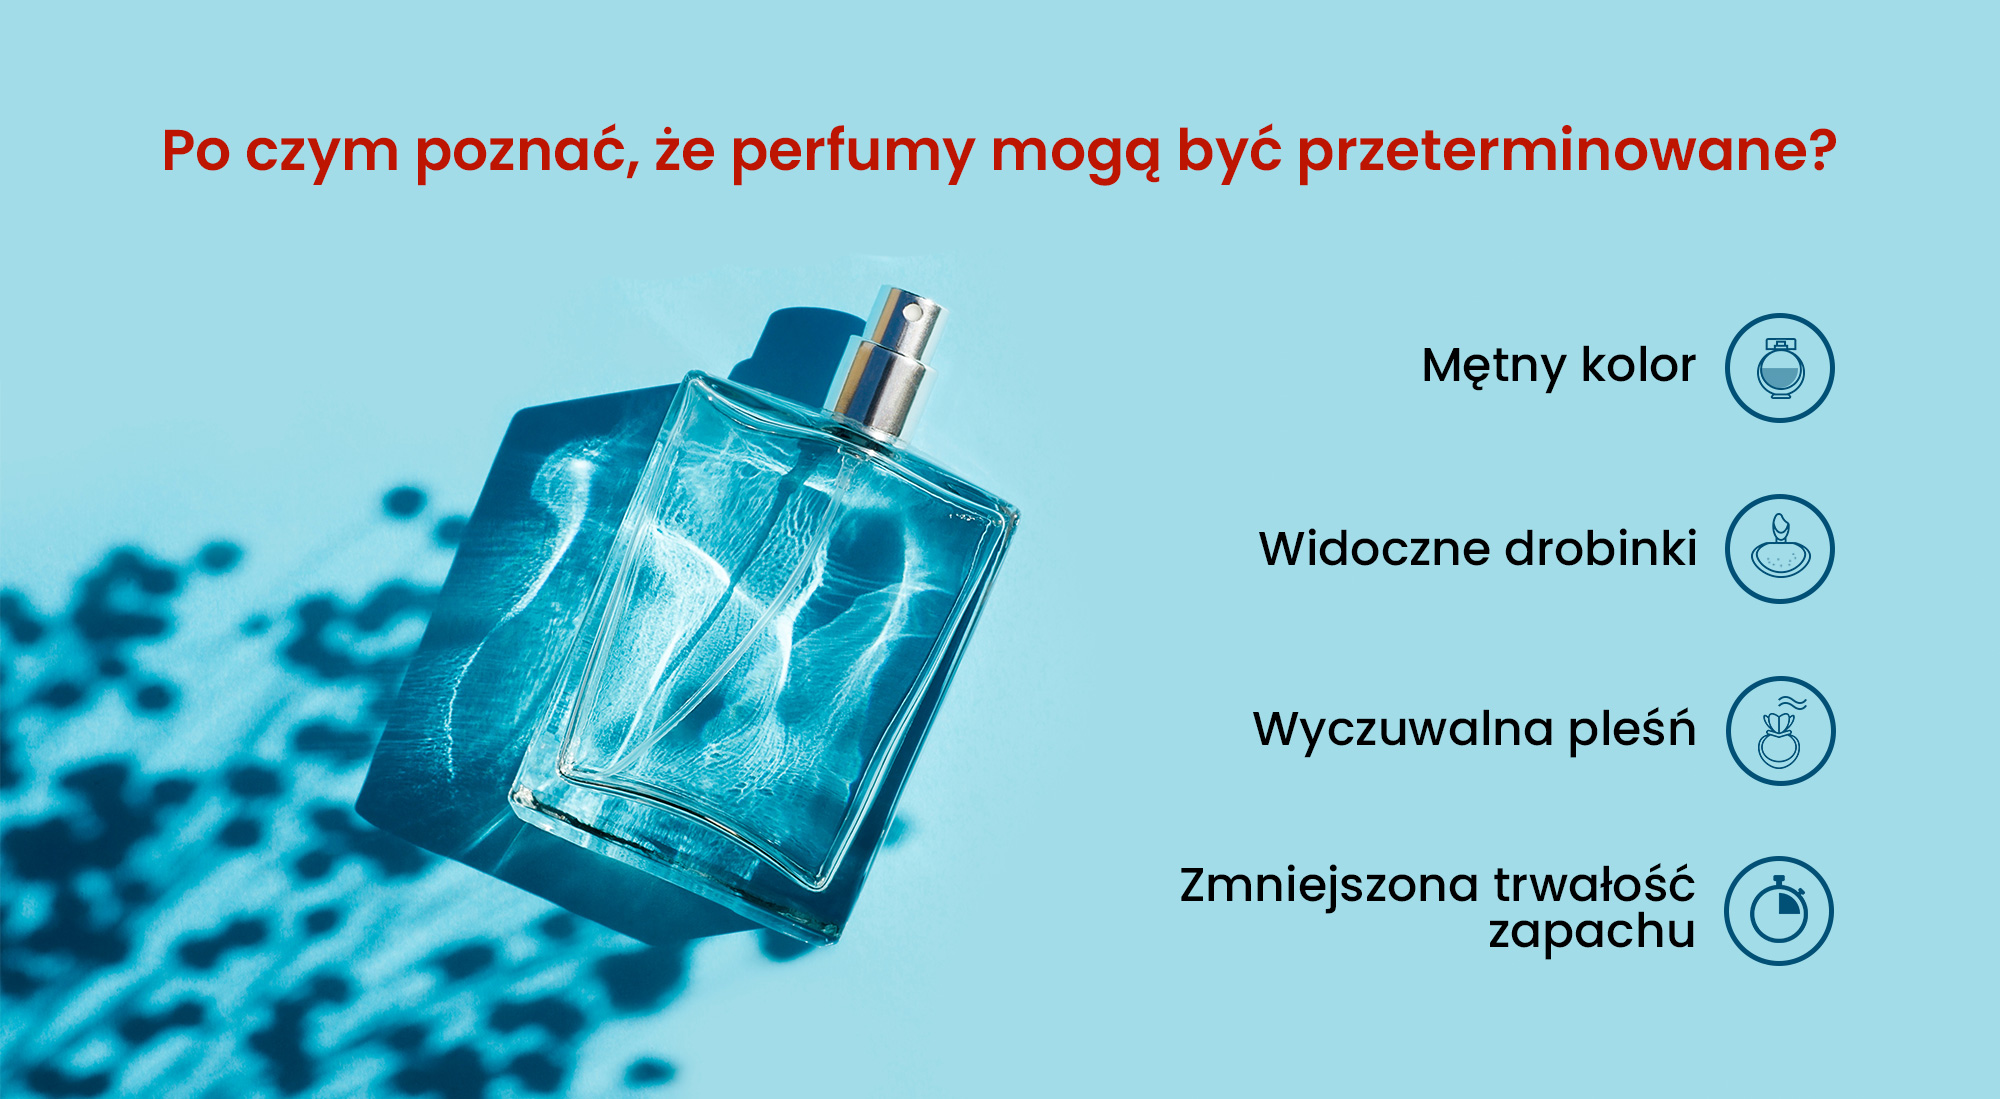 Po czym poznać, że perfumy mogą być przeterminowane